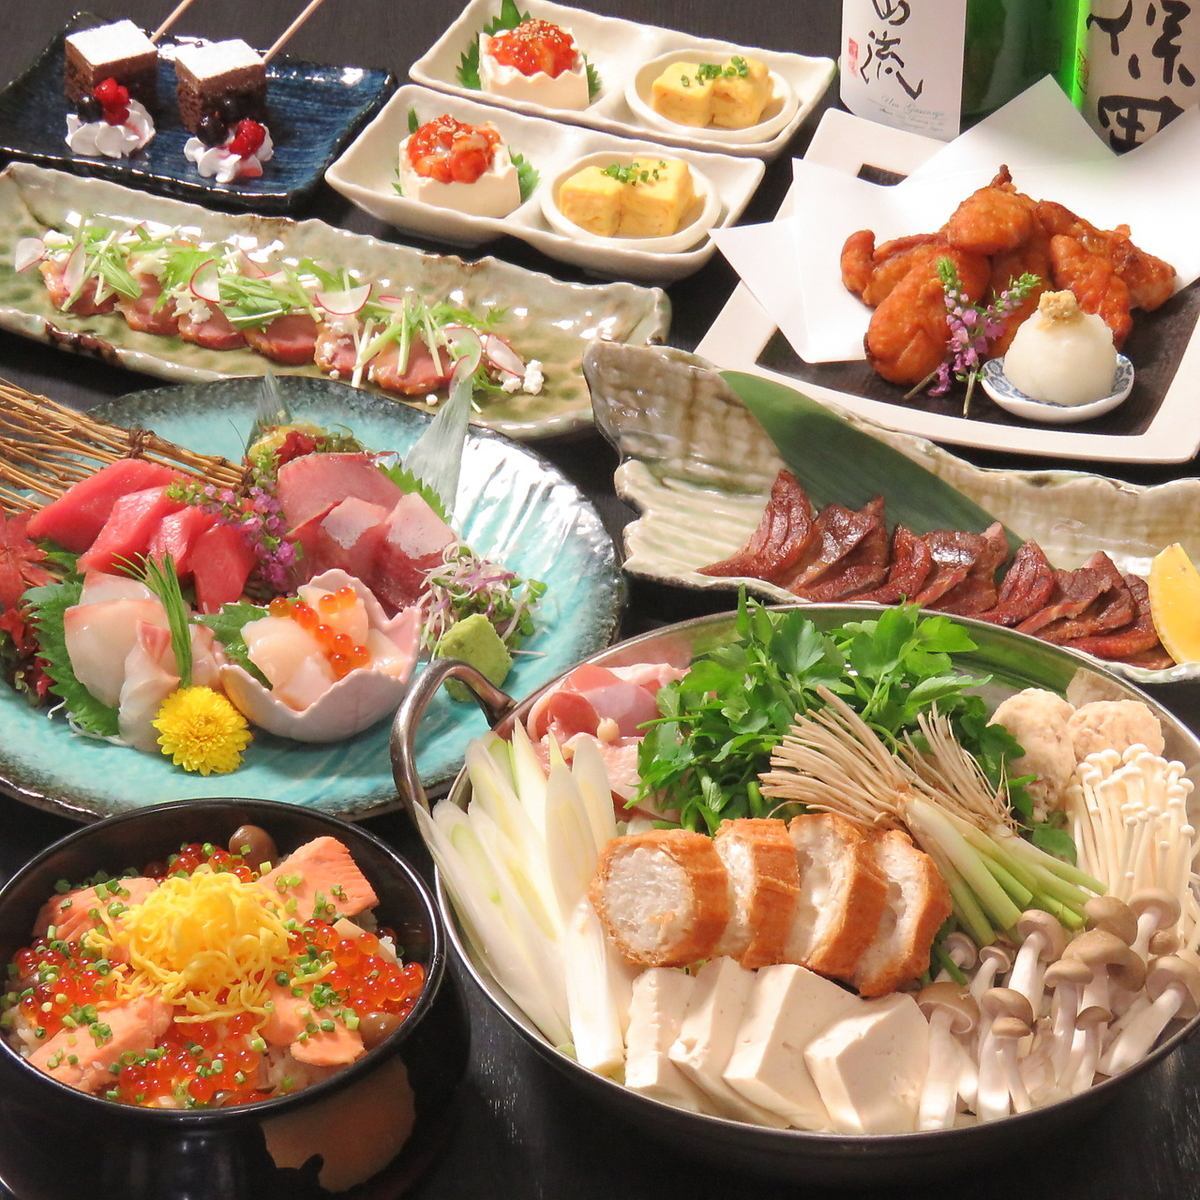 雞肉塞里、塞里火鍋、4塊鮮魚、什錦牛舌等9種菜餚、2小時無限暢飲當地酒5,500日元→4,500日元